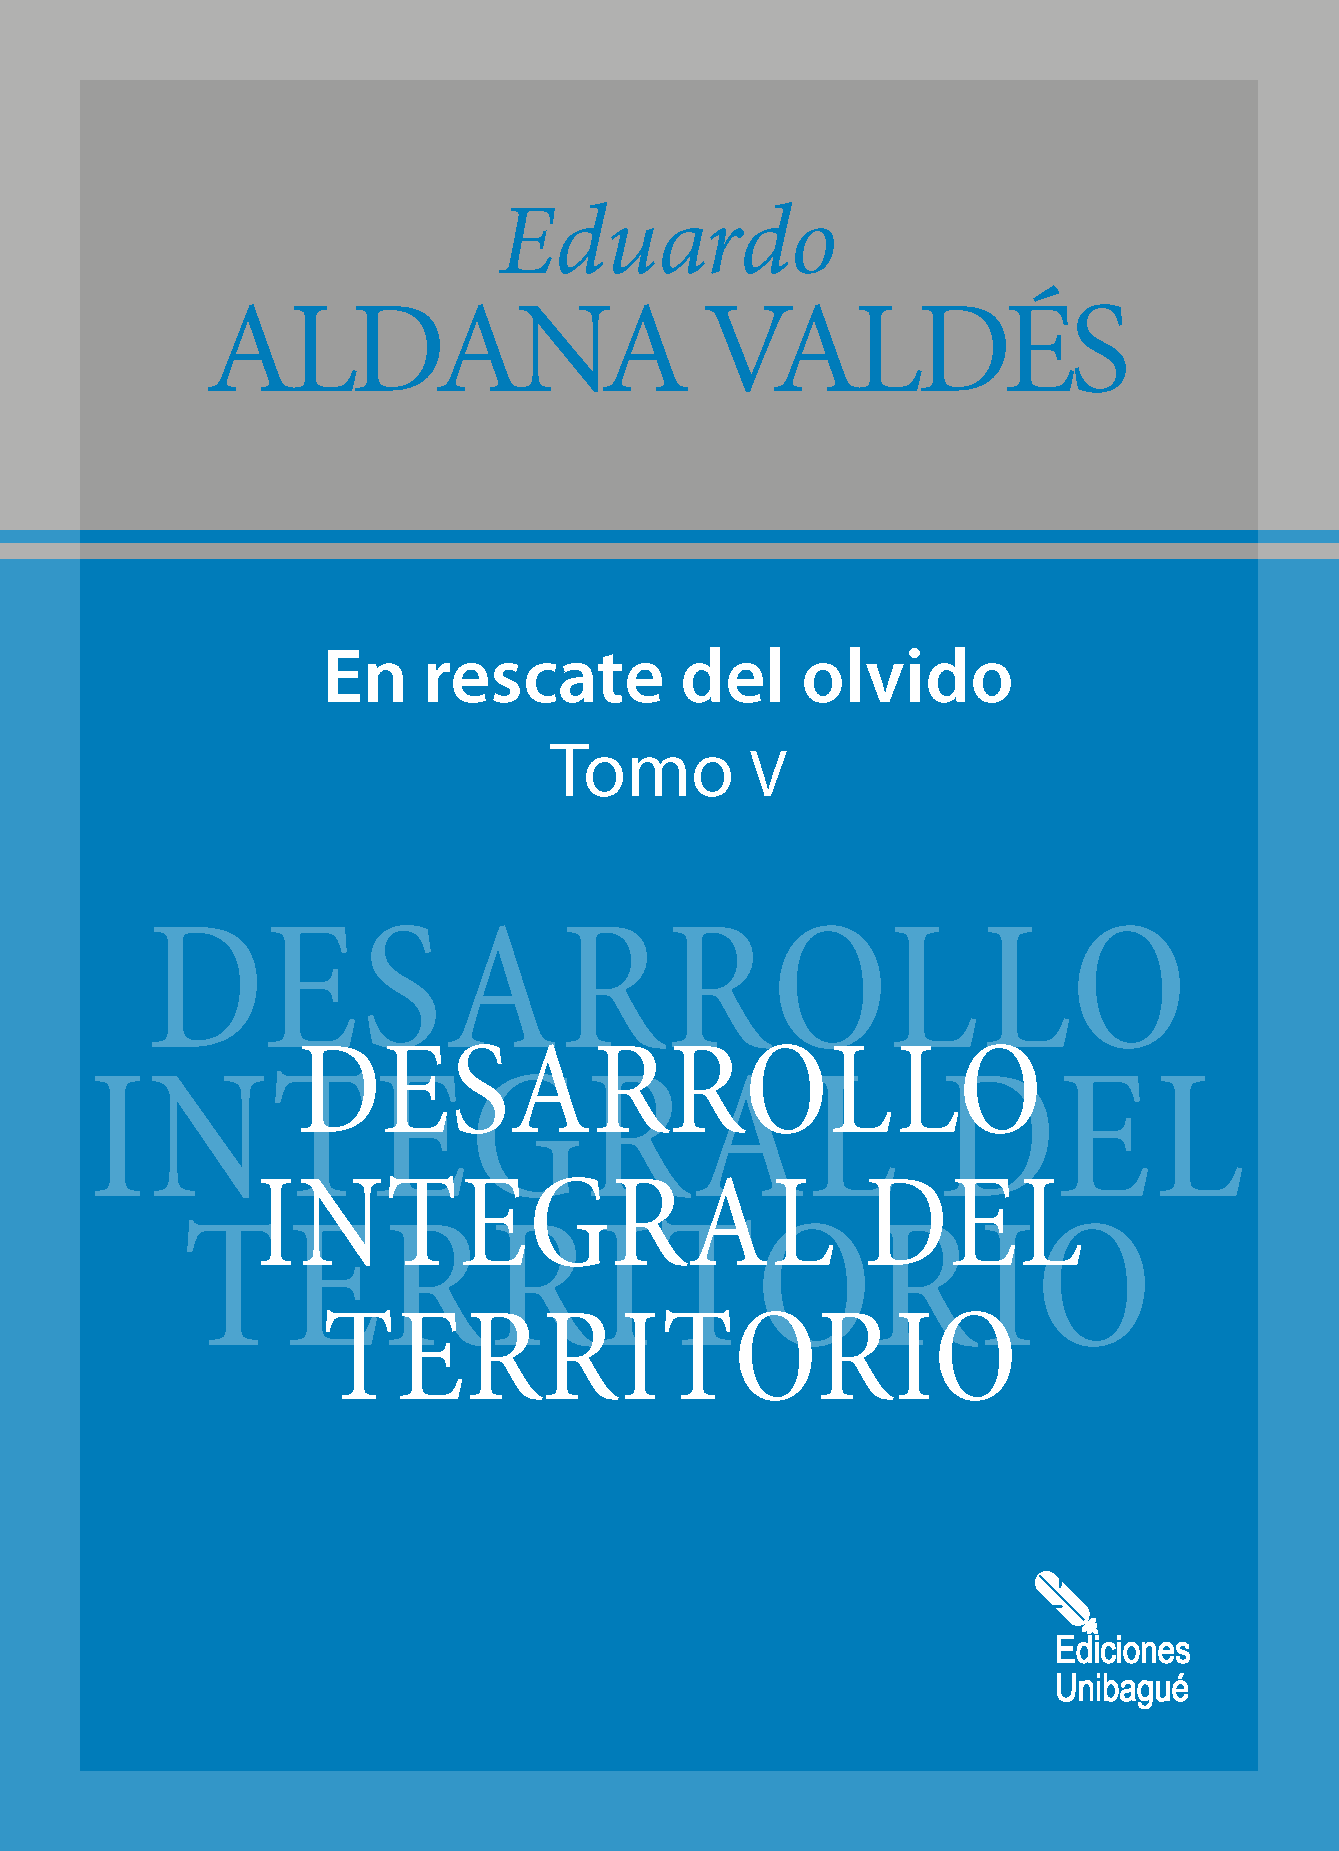 Cover of Desarrollo integral del territorio